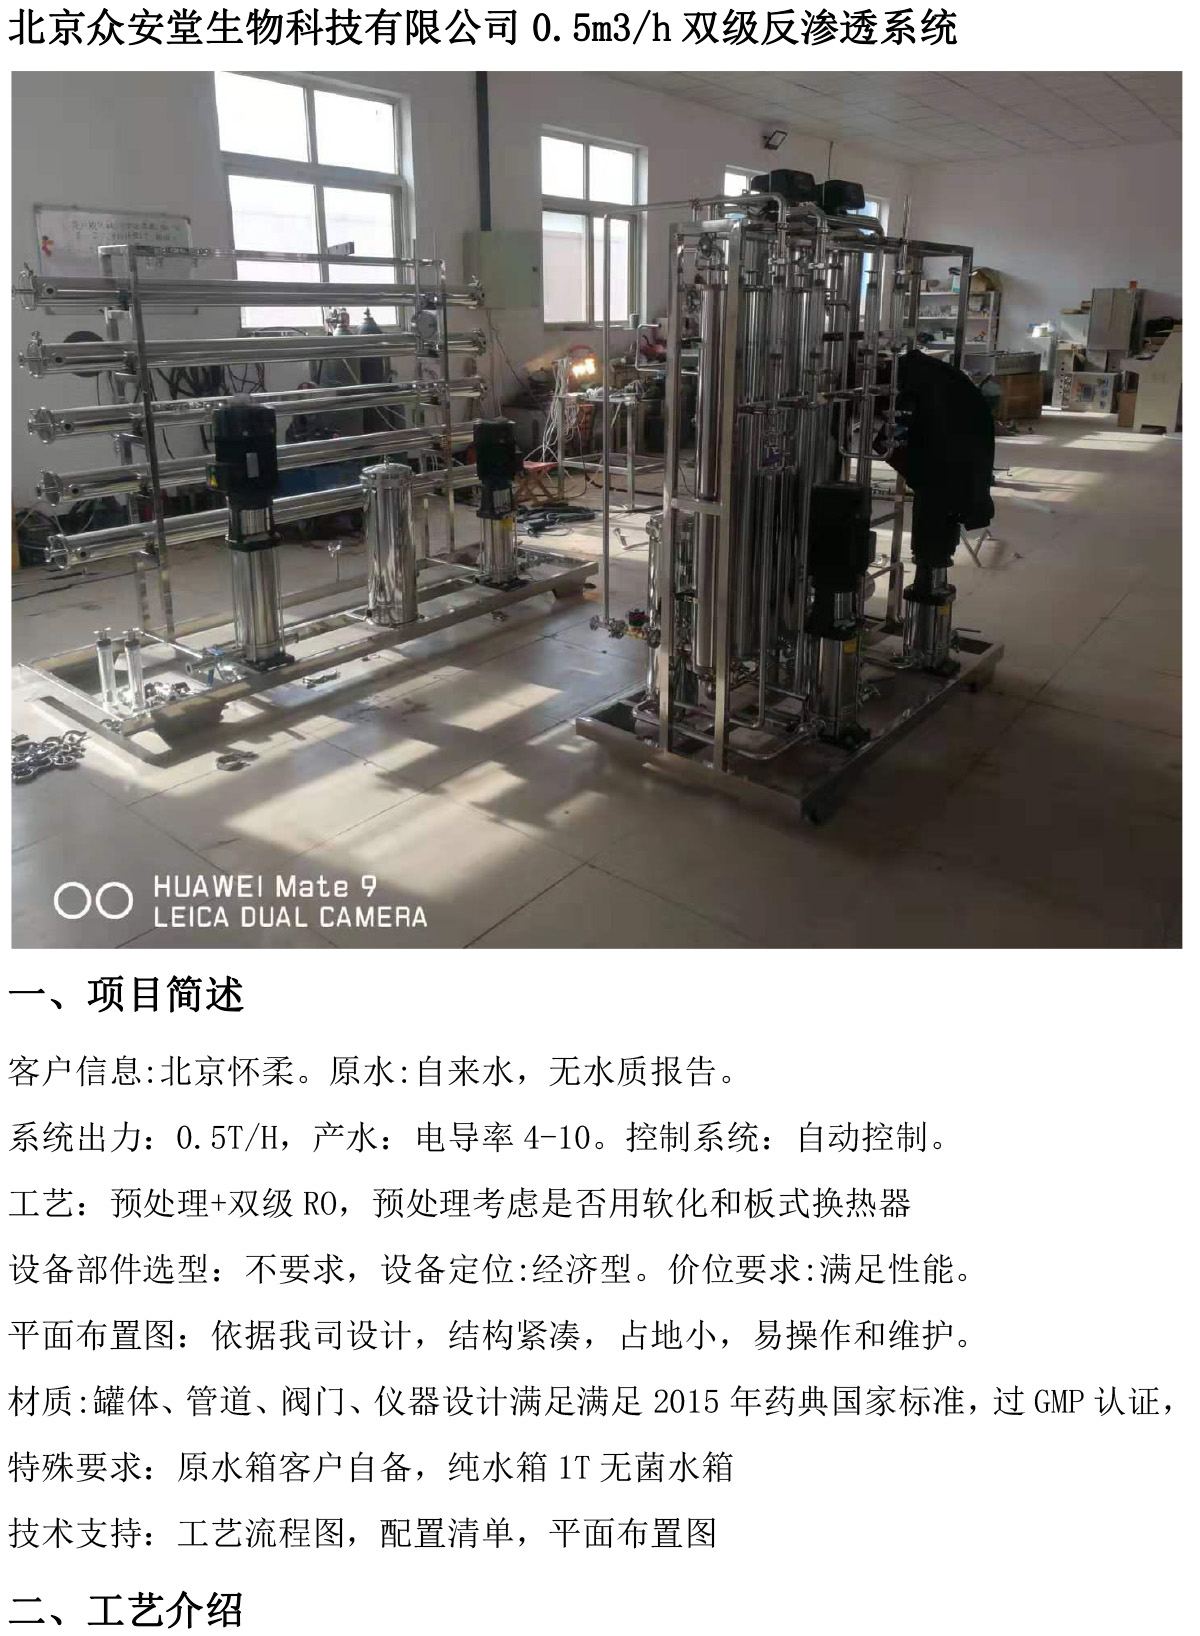 北京众安堂生物科技有限公司0.5m3/h双级反渗透系统